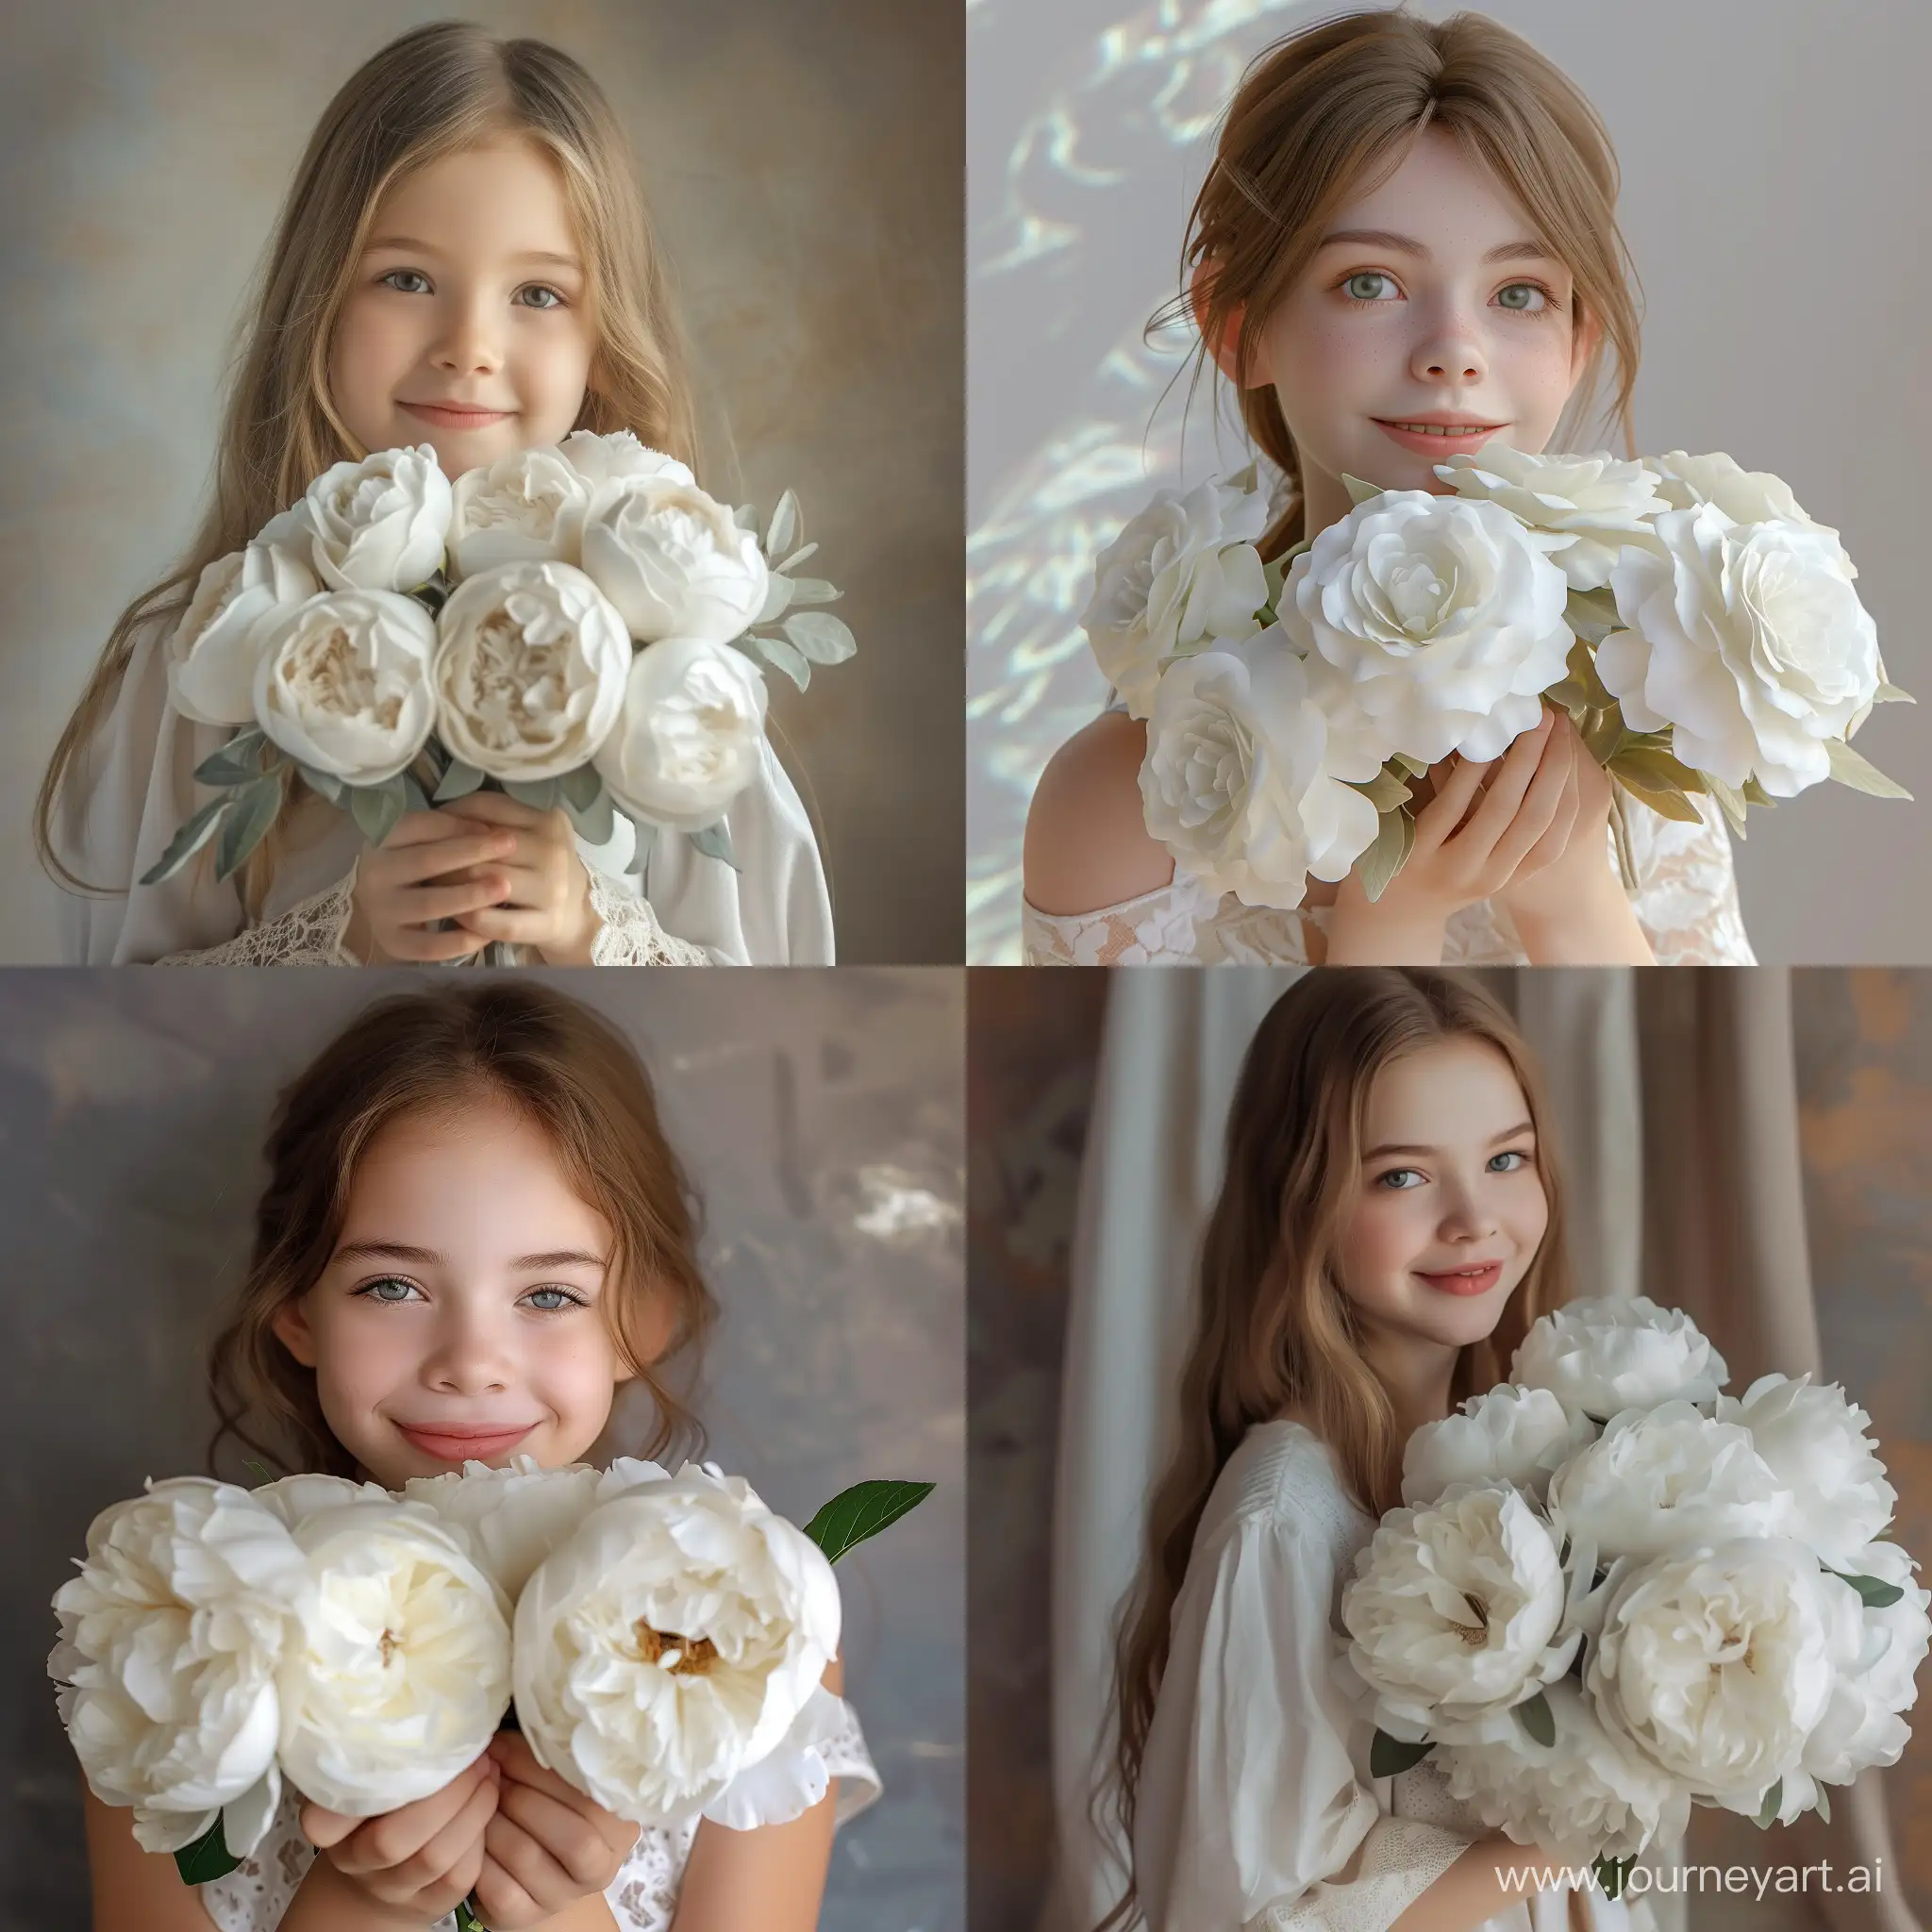 ✨✨✨   Красивая, весёлая девушка 20  держит в руках охапку белых пионовидных роз, полностью в кадре, эстетично, красиво, 3d, реалистично, профессиональное фото, высокая детализация, 30mm lens, 1/250s, f/2.8, ISO 100, мягкое освещение